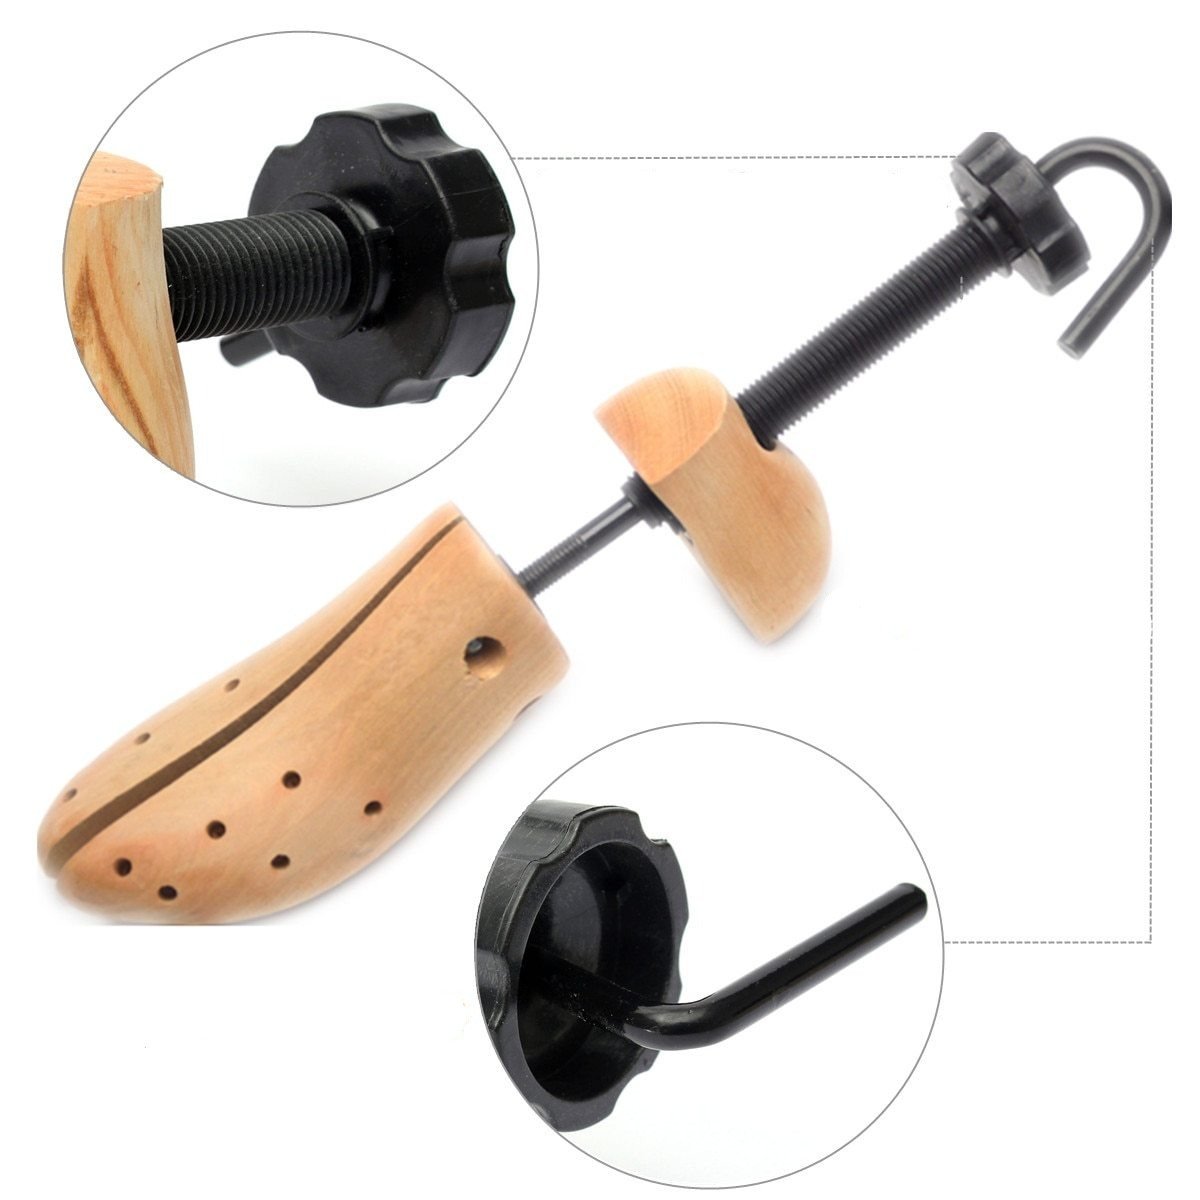 Adjustable Cedar Wood Shoe Stretcher 1 Piece GR 